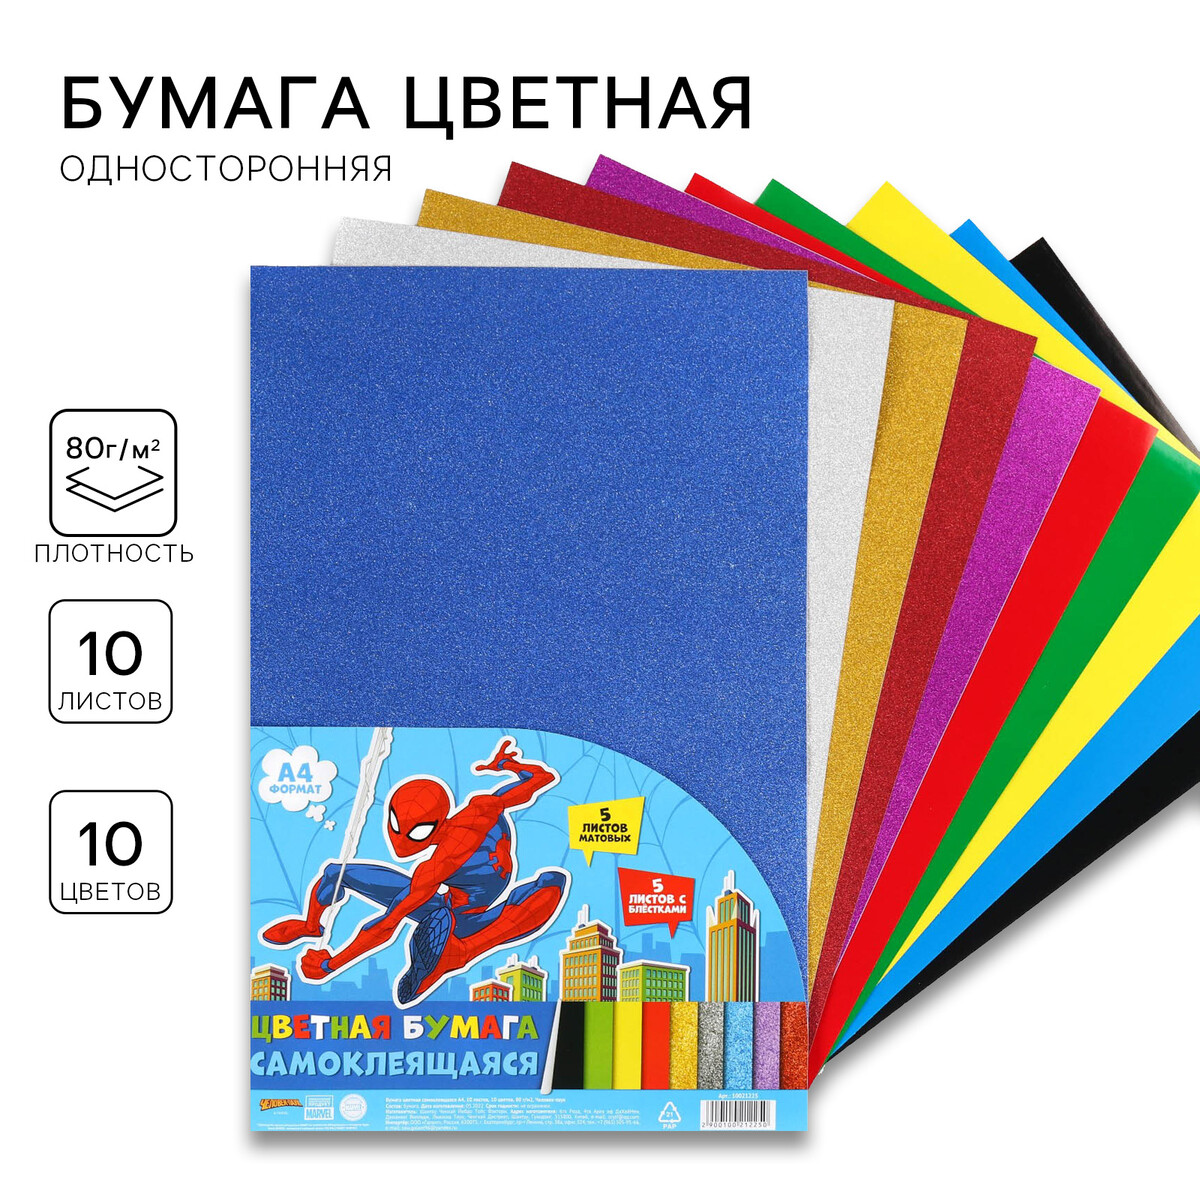 Бумага цветная самоклеящаяся, с блестками, а4, 10 листов, 10 цветов, мелованная, односторонняя, в пакете, 80 г/м², человек-паук